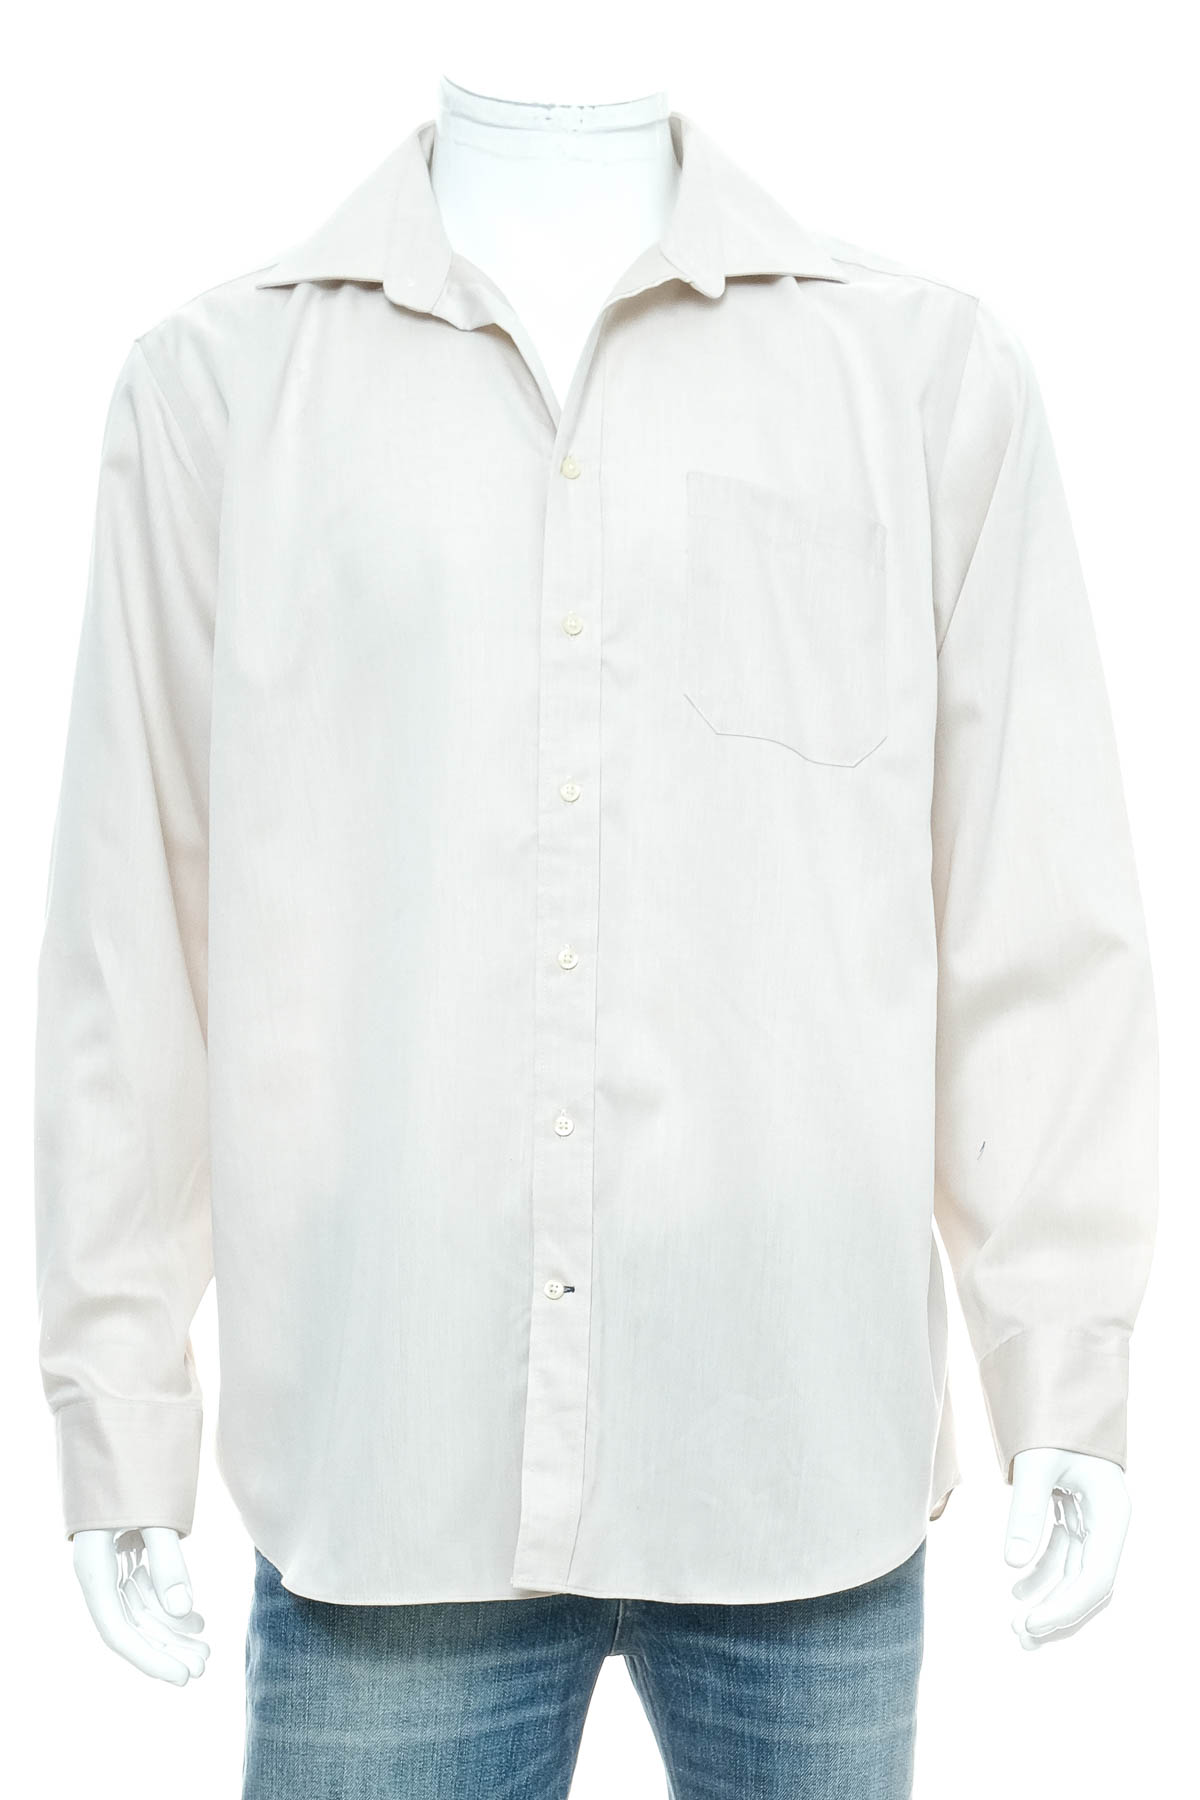 Ανδρικό πουκάμισο - WESTBURY - 0